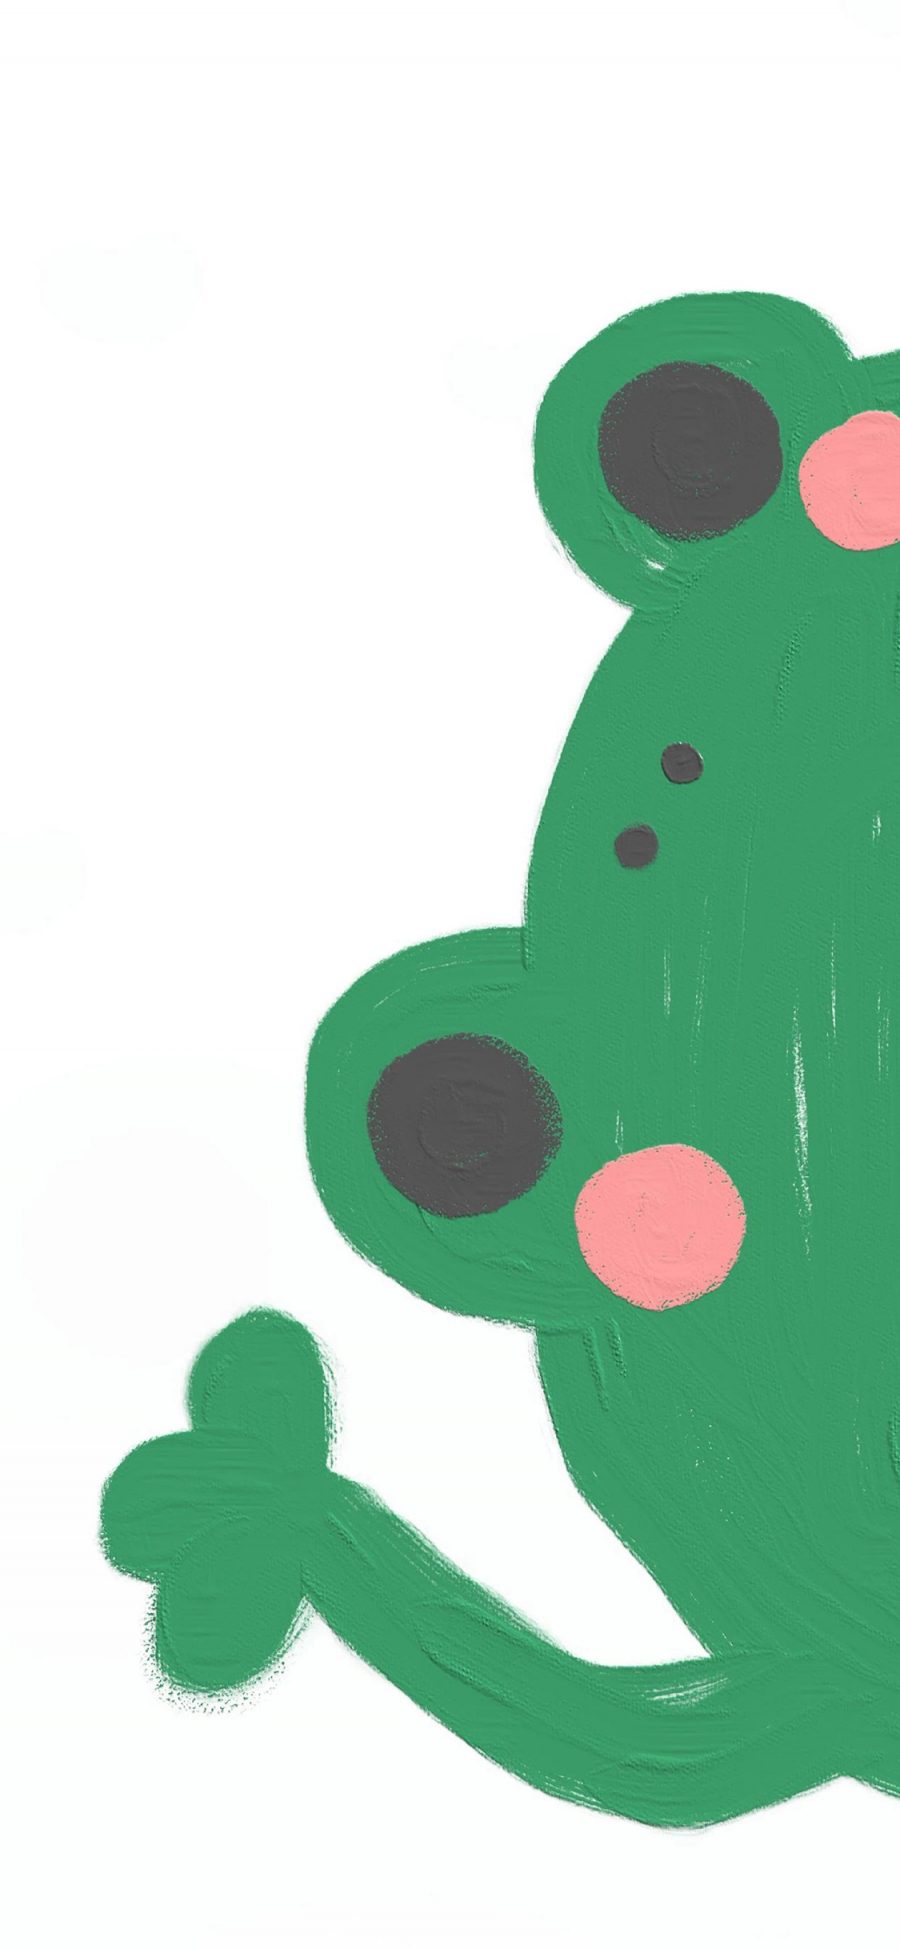 [2436×1125]可爱 青蛙 可爱 彩绘 苹果手机动漫壁纸图片